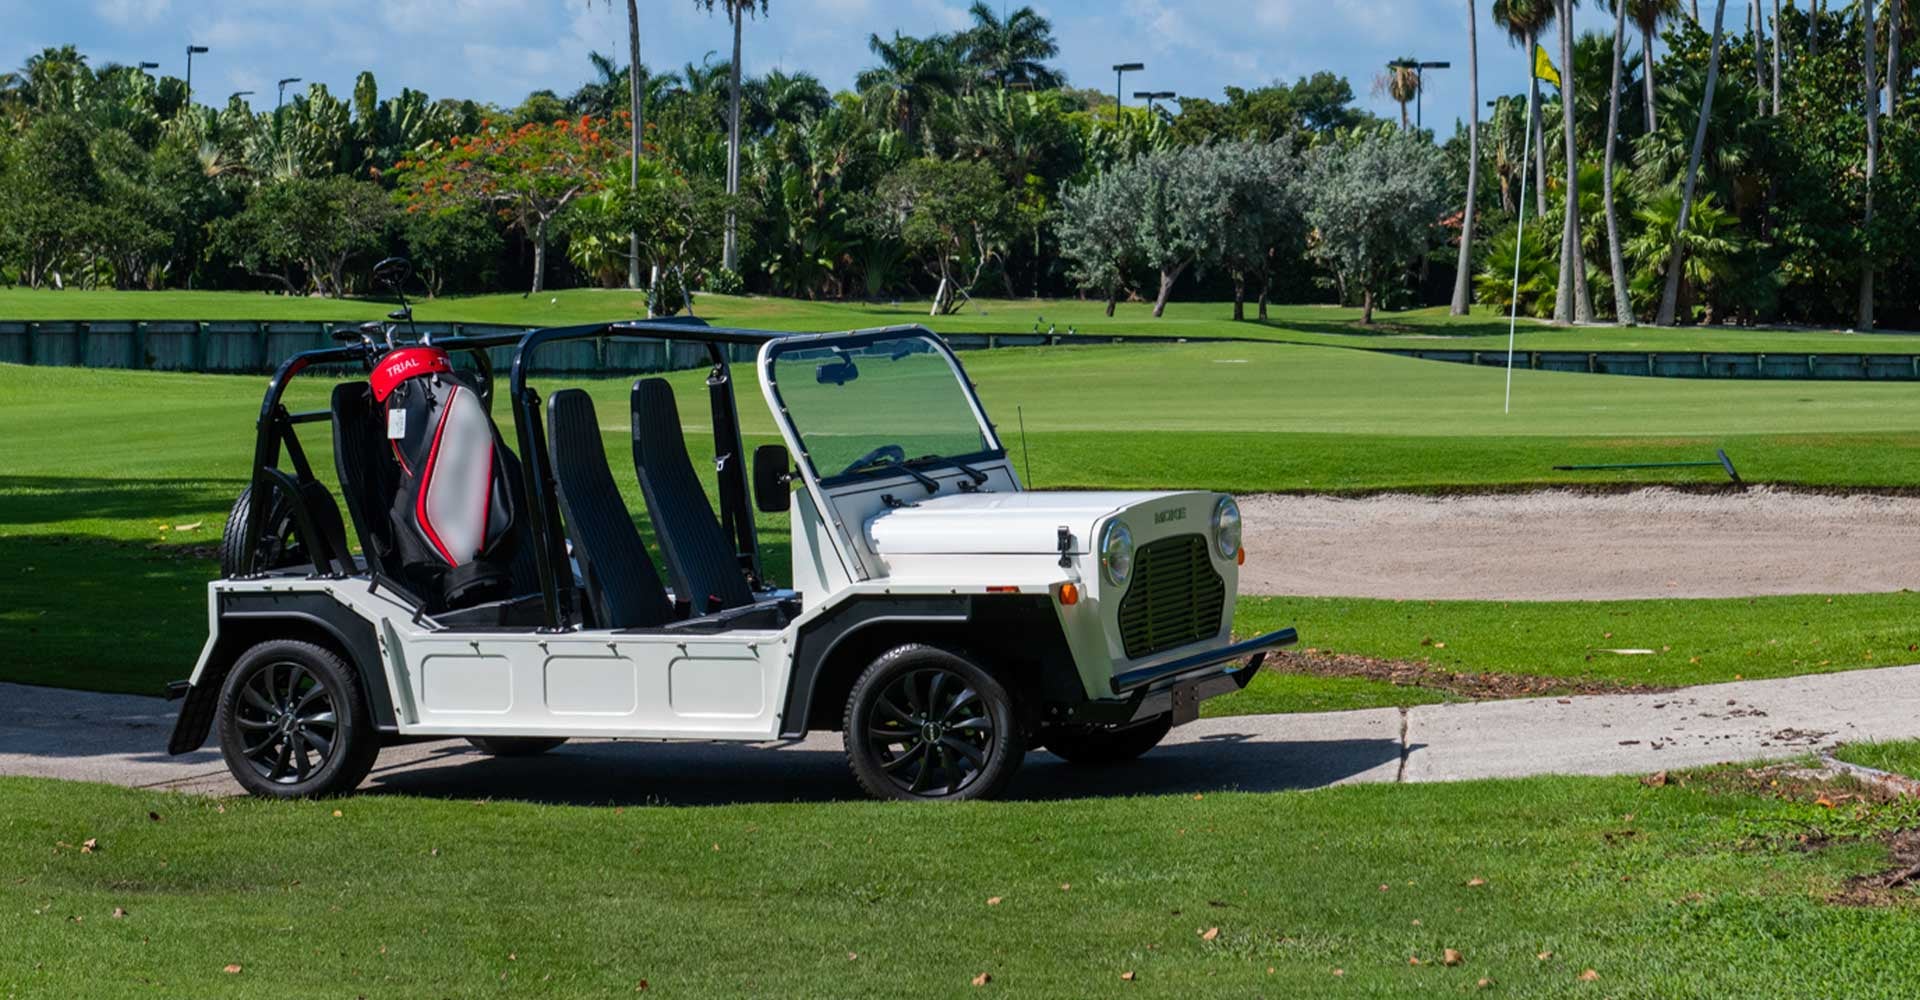 Luxury Golf Carts For Sale in Wilmington DE